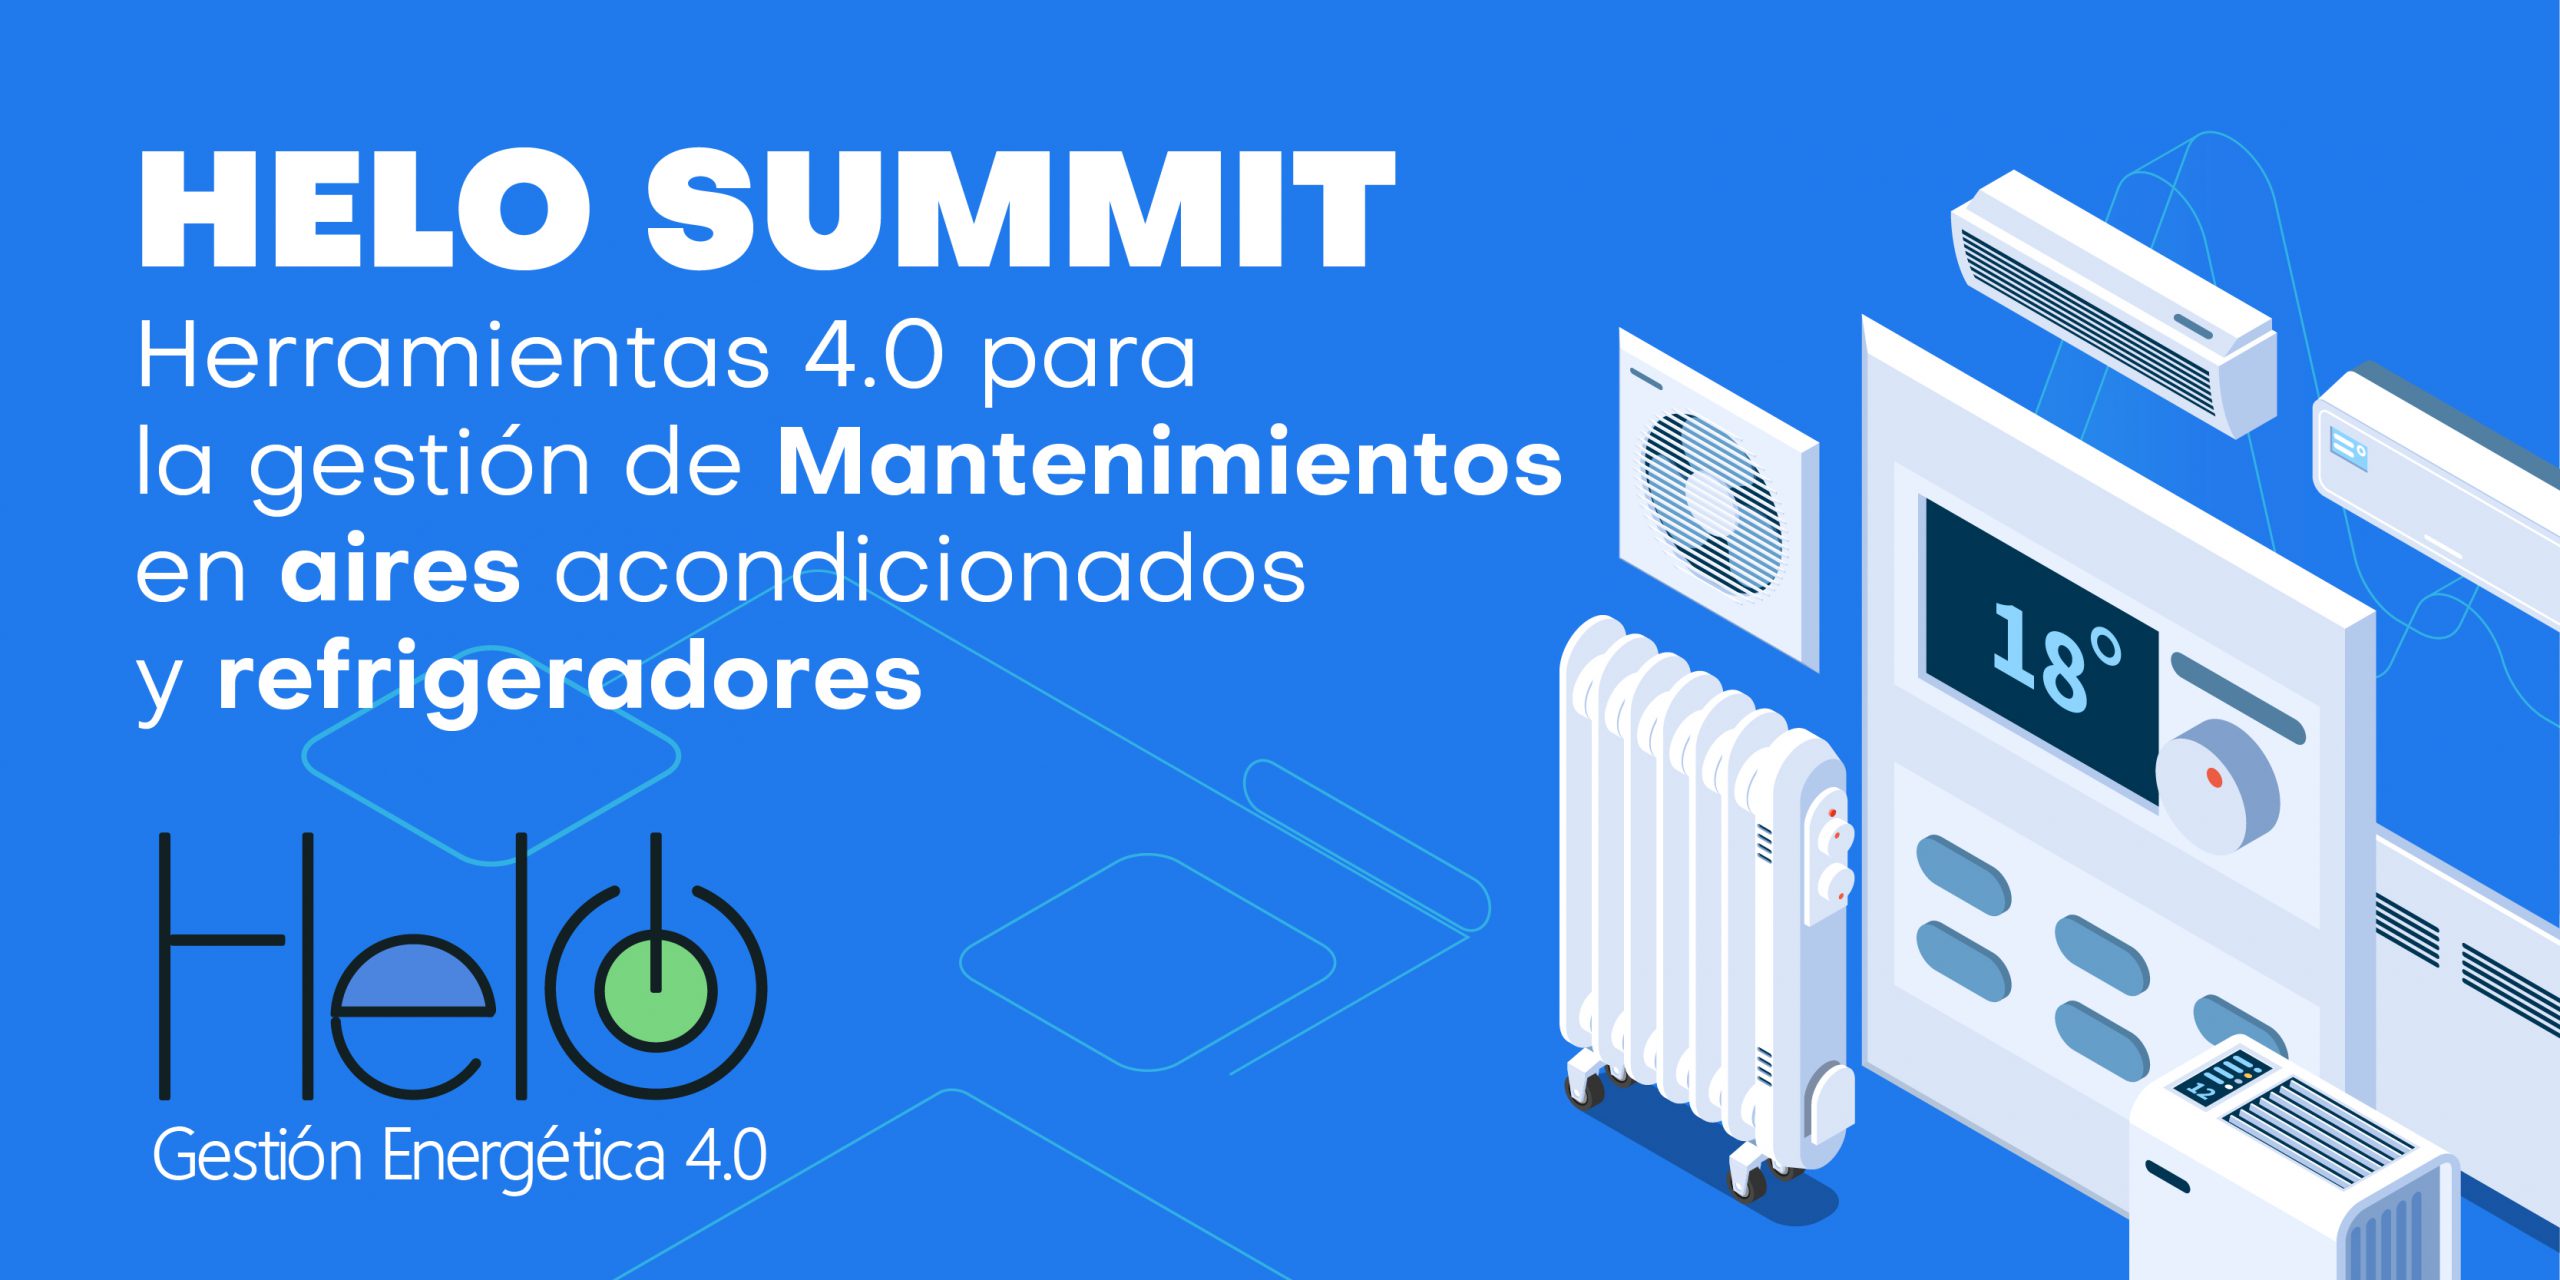 Helo Summit: Herramientas 4.0 para gestión mantenimientos de aires acondicionados y refrigeración